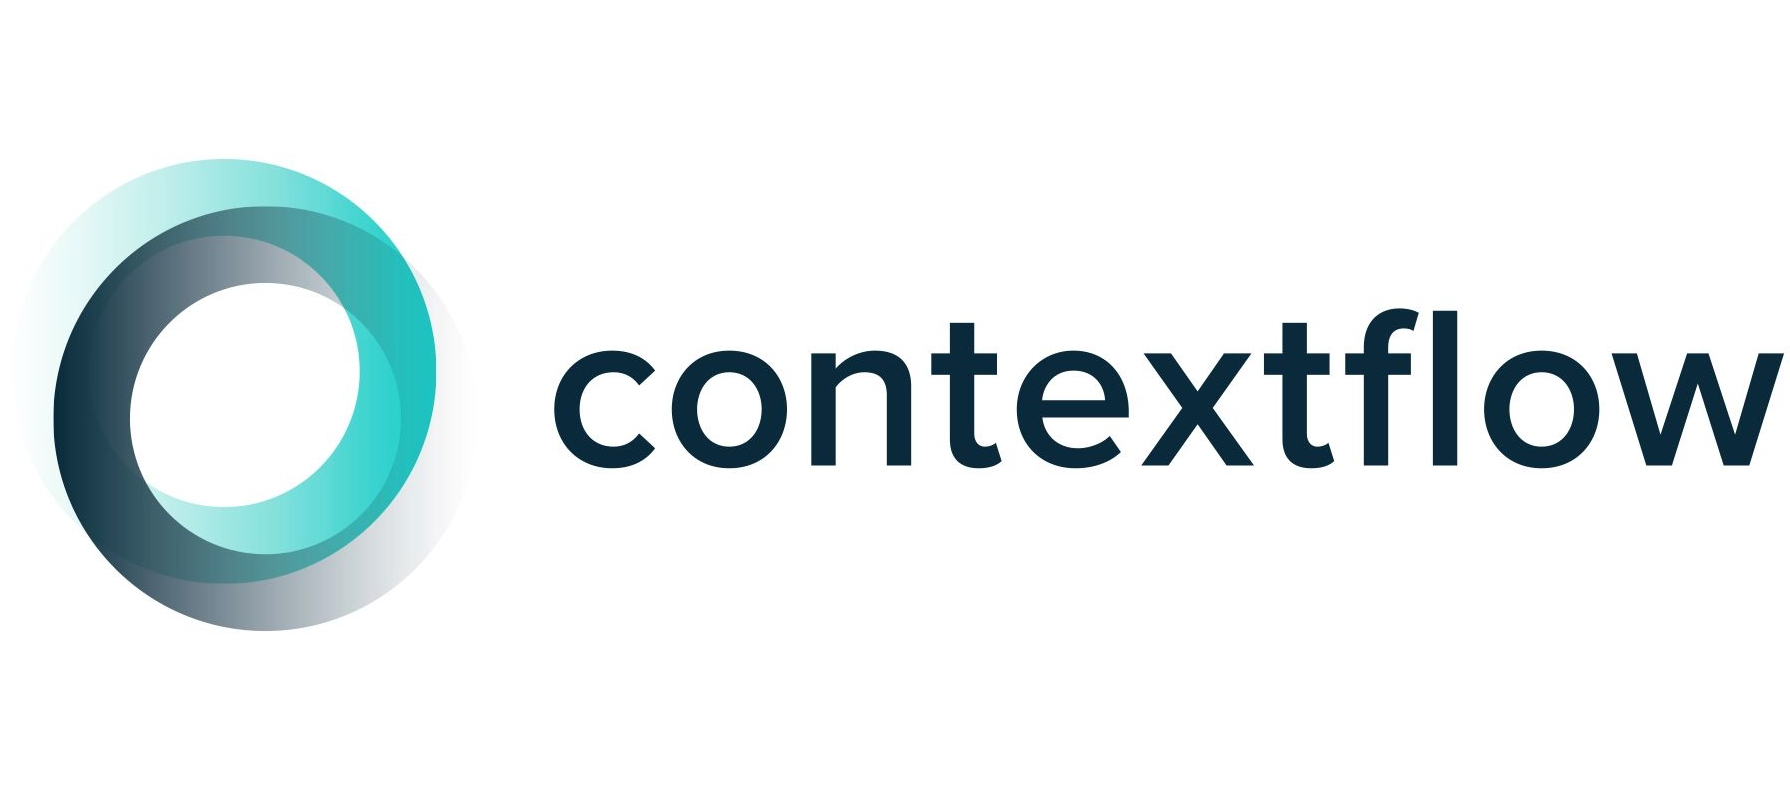 Contextflow logo